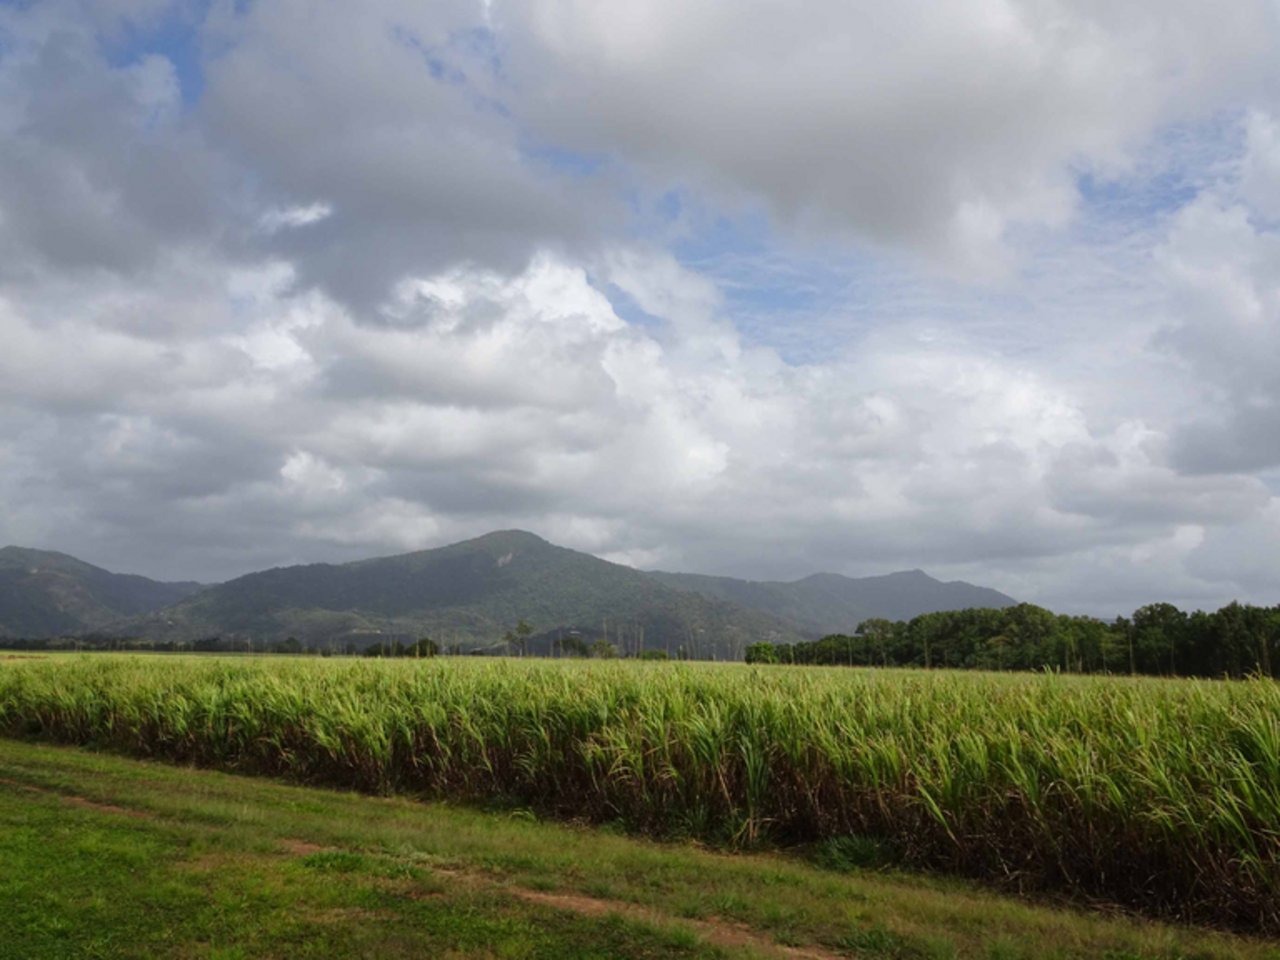 Zuckerrohr bei Cairns, Queensland. (Bild mr)